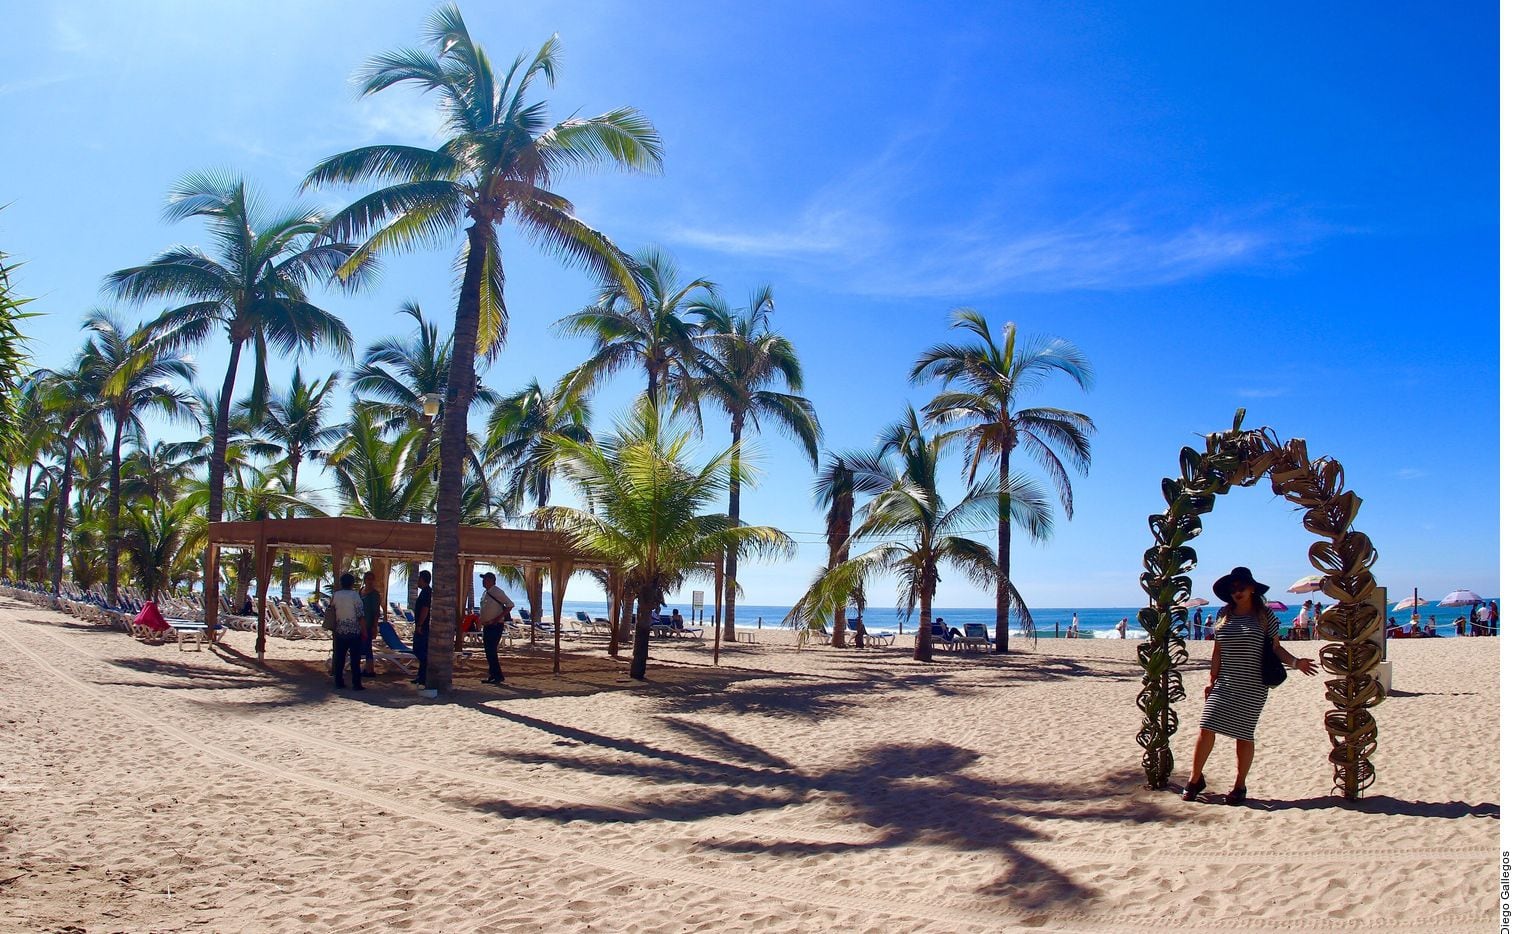 Imágenes de las playas de Mazatlán, Sinaloa. Cerca de este punto turístico, residentes grabaron en video al youtuber Markitos Toy, haciendo arrancones con carros lujosos.